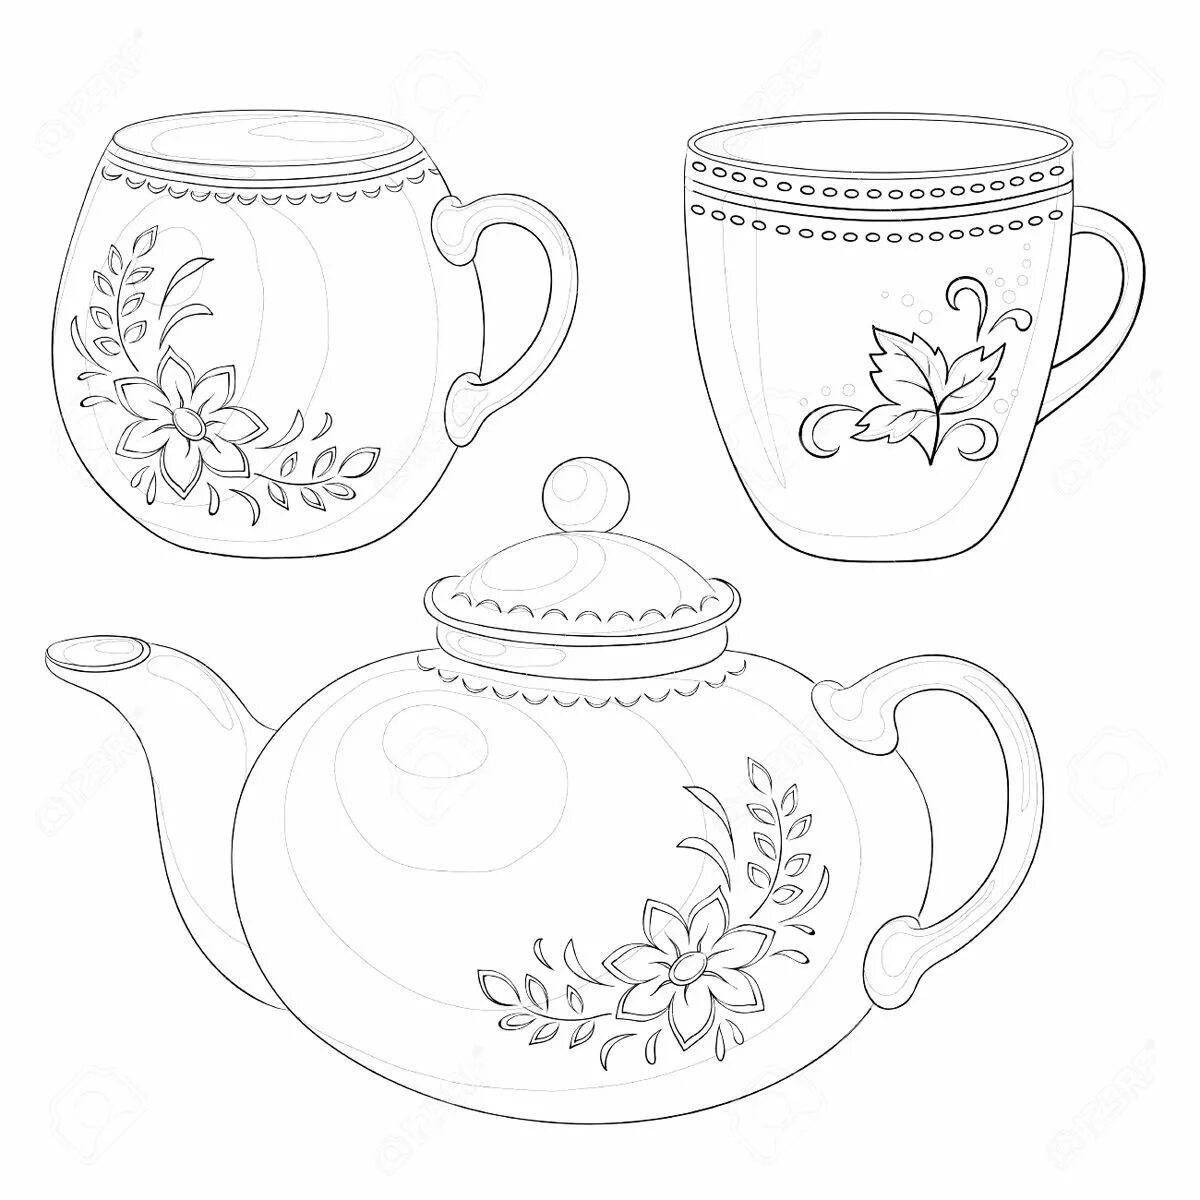 Увлекательная раскраска чайной посуды для малышей